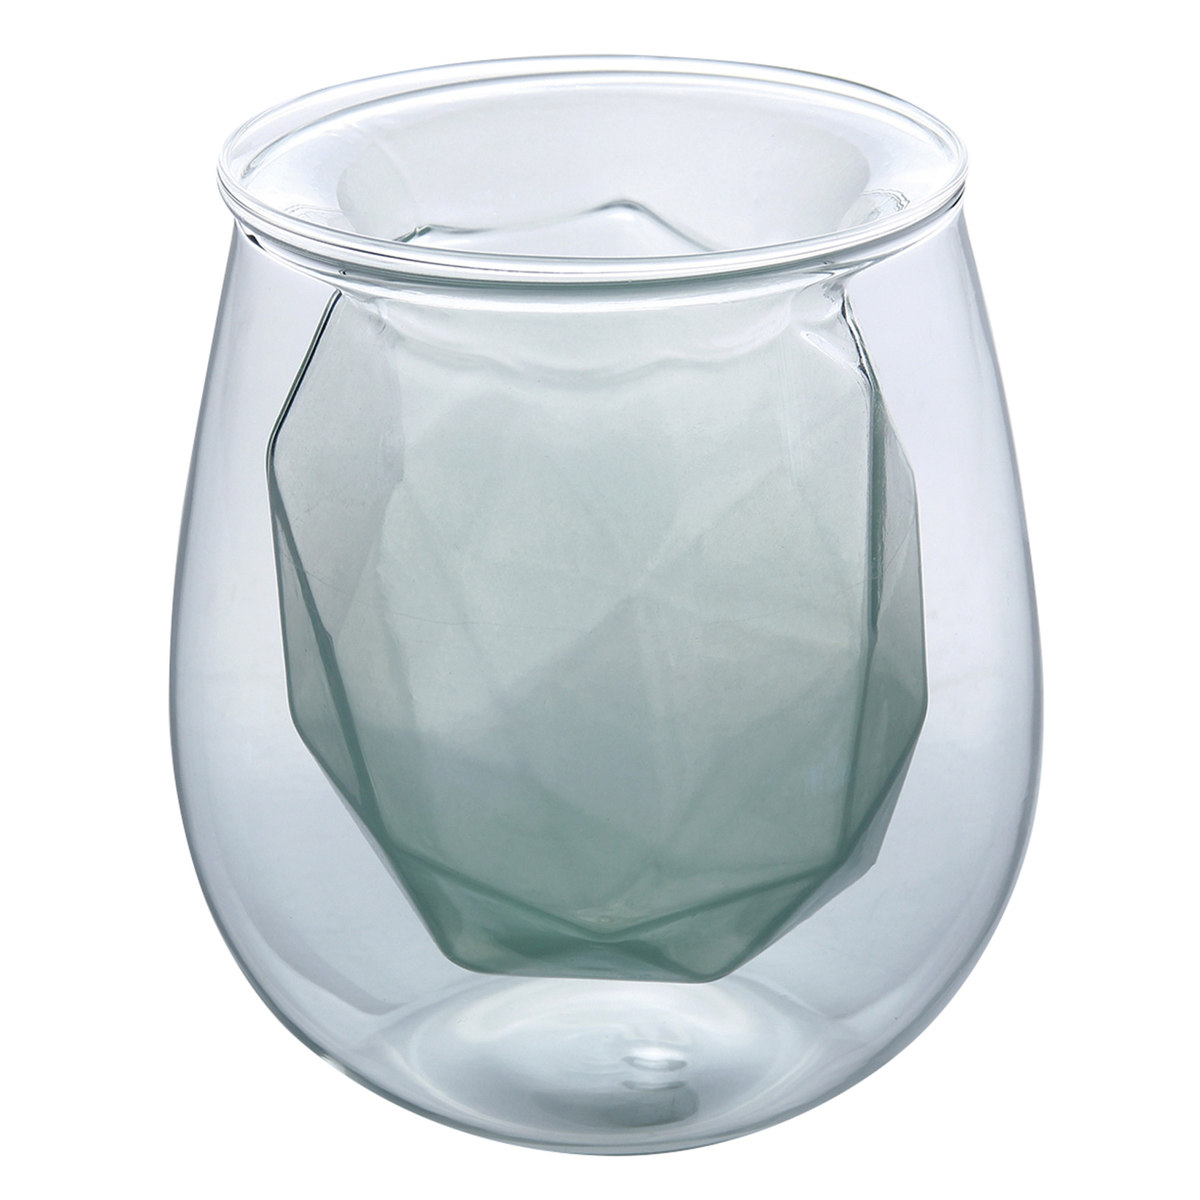  水晶 オレンジ 変形 ガラス 花瓶  フラワーベース クリスタル